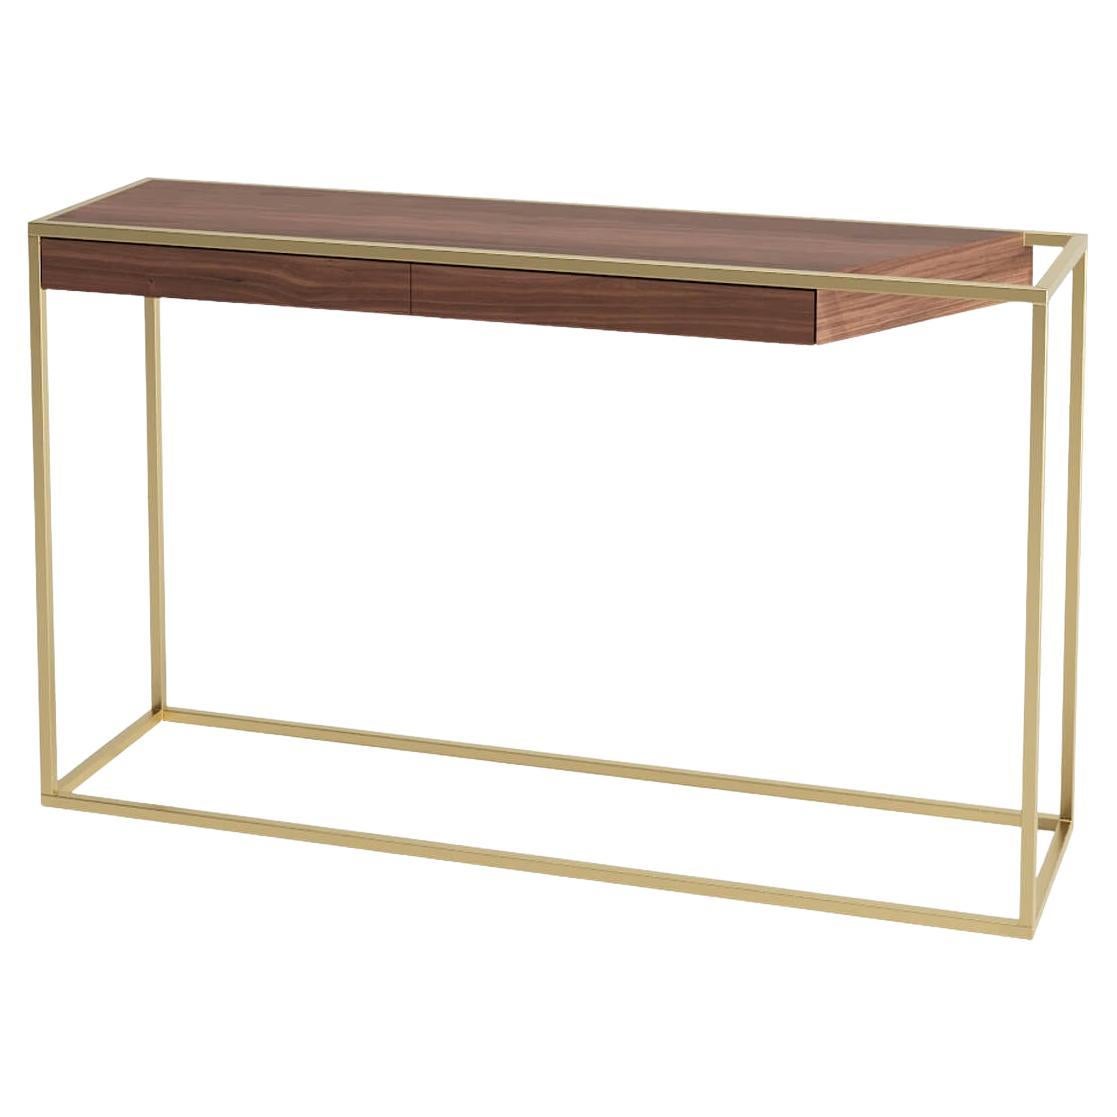 Table console rectangulaire moderne et minimaliste en bois de noyer et laiton brossé